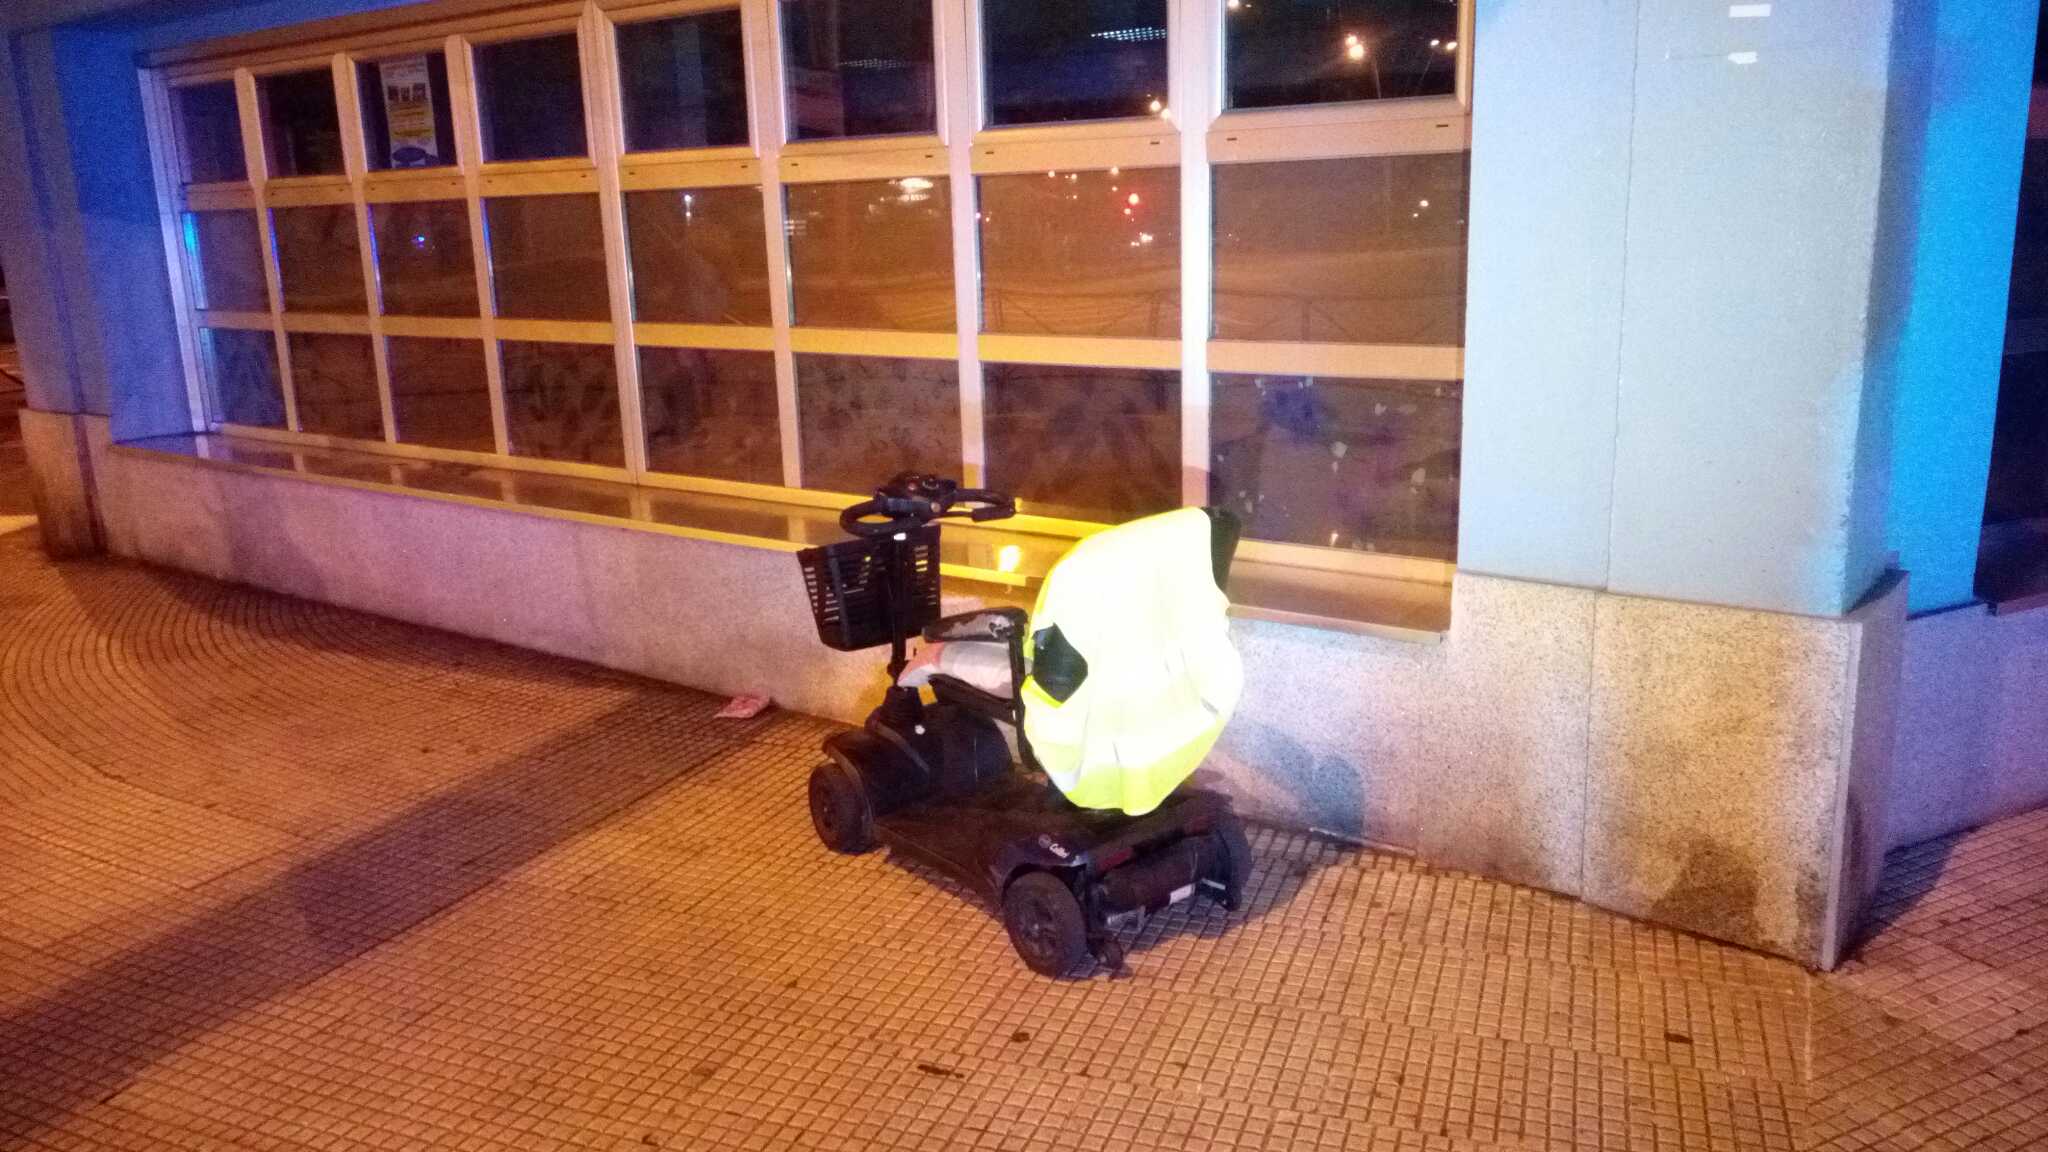 Buscan a quien perdió en Vigo una silla para personas con movilidad reducida